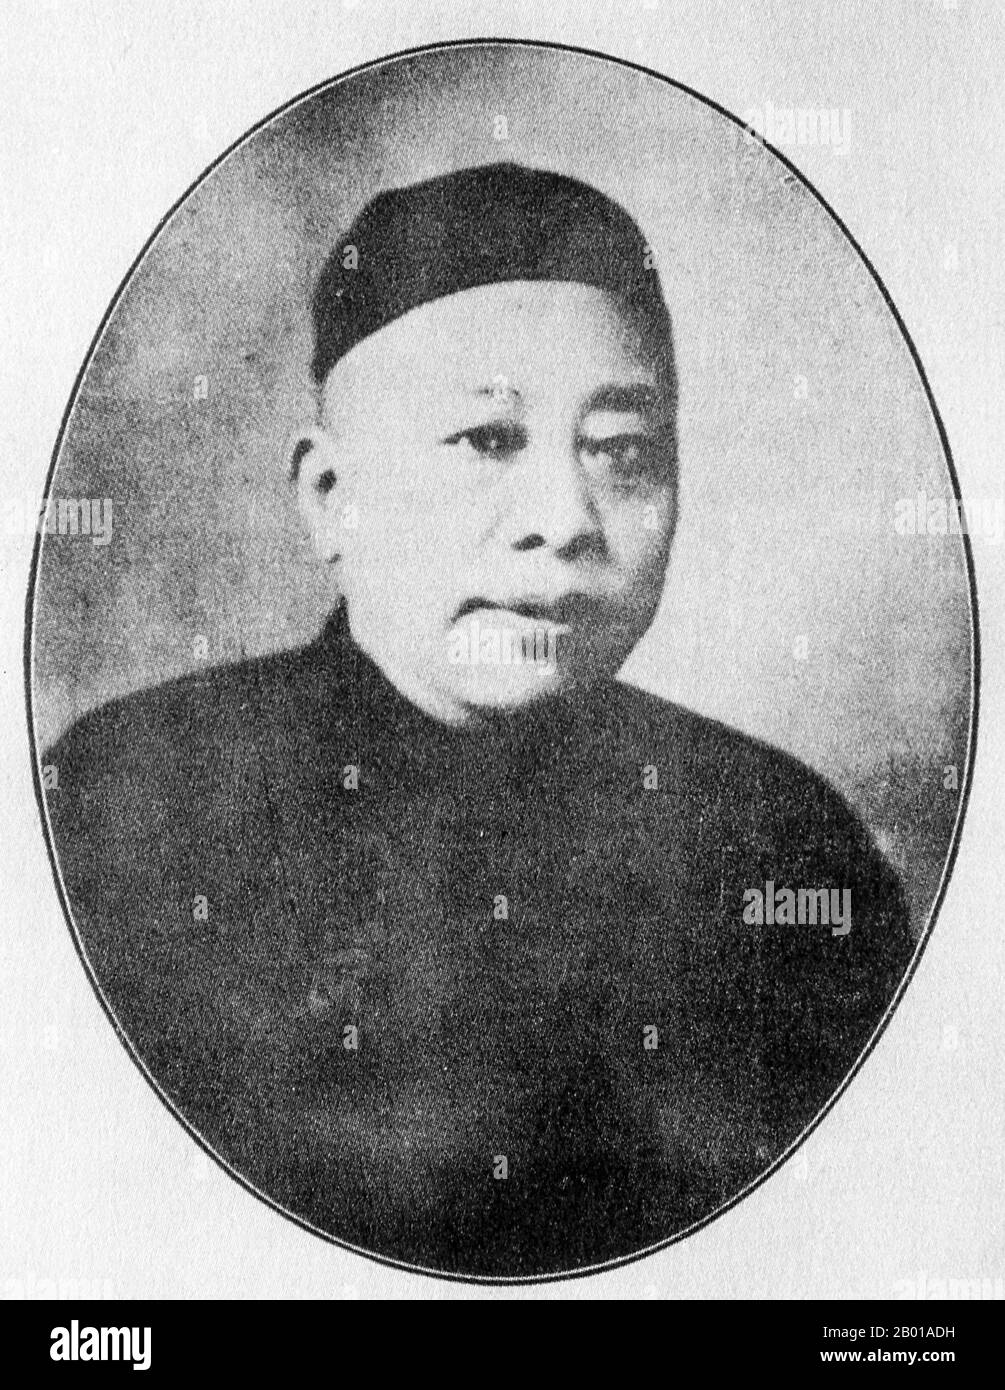 China: Huang Jinrong (10. Mai 1868 - 20. Juni 1953), französischer Detektiv der Konzession und Schanghai-Mobster, 1930s. Sein Vater, der in Suzhou geboren wurde, war in Suzhou ein Konstall, bevor die Familie nach Shanghai auswanderte, um ein Teehaus zu eröffnen. Während seiner Kindheit erkrankte Huang an einem schlechten Pockenfall. Während seine Untergebenen ihn „Großmeister Huang“ nannten, nannten ihn hinter seinem Rücken alle „pockmarked Huang“. Huang ging zur Arbeit in das Teehaus seines Vaters, die nahegelegene Zhengjia-Brücke beherbergte damals eine große Bevölkerung von Gaunern und Gauner, und Huang organisierte viele von ihnen zu einer Bande von vereidigten Anhängern. Stockfoto